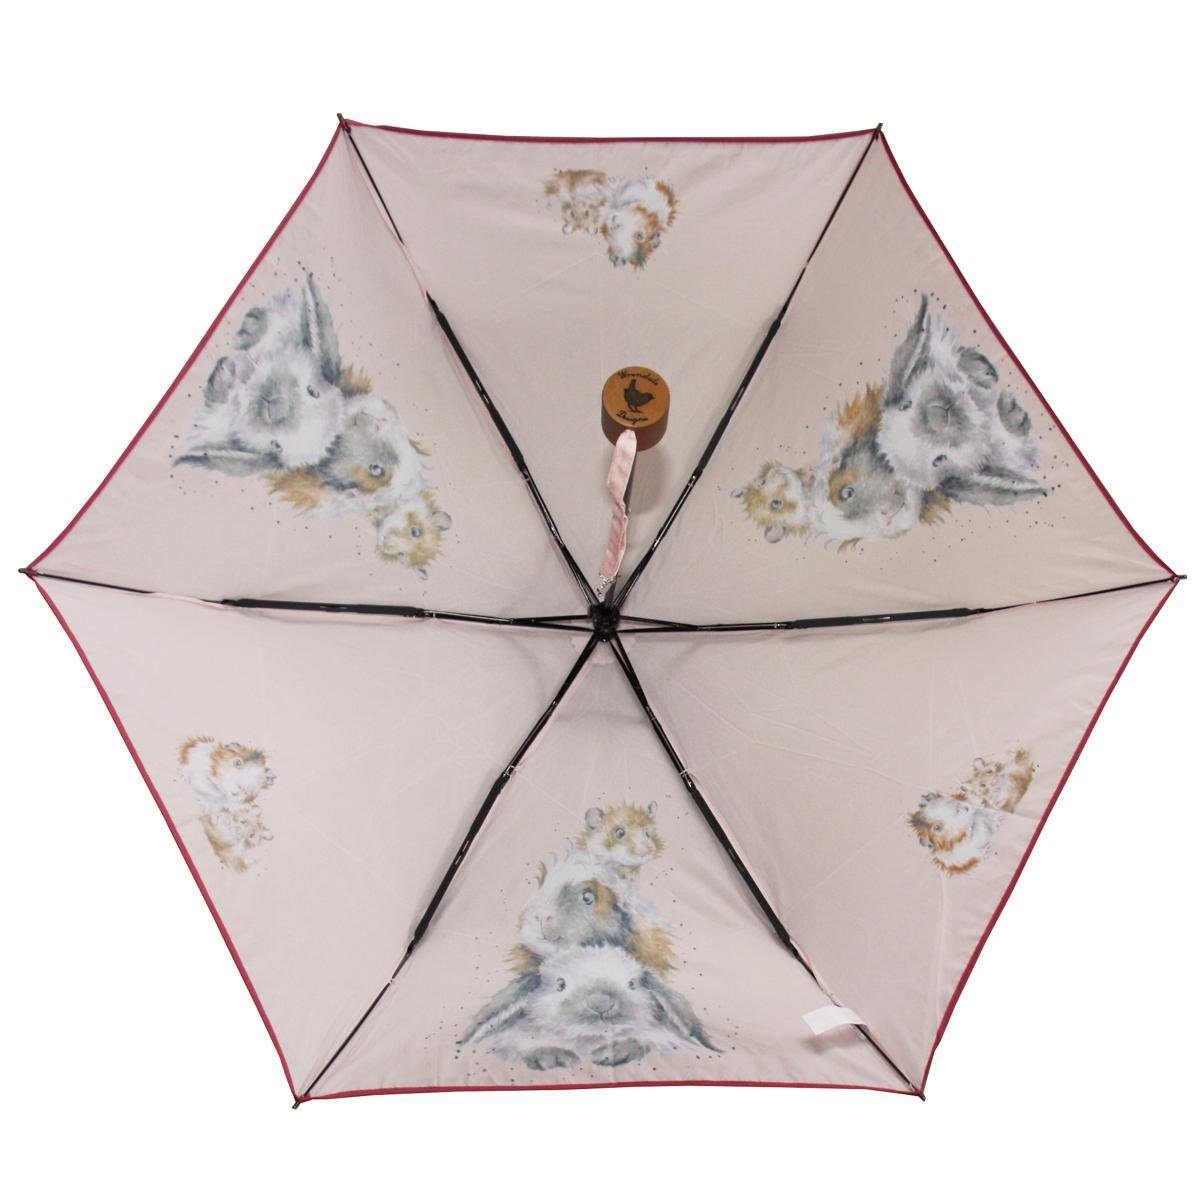 Taschenregenschirm und Designs Hase Piggy Freunde Wrendale Wrendale seine Taschen-Regenschirm